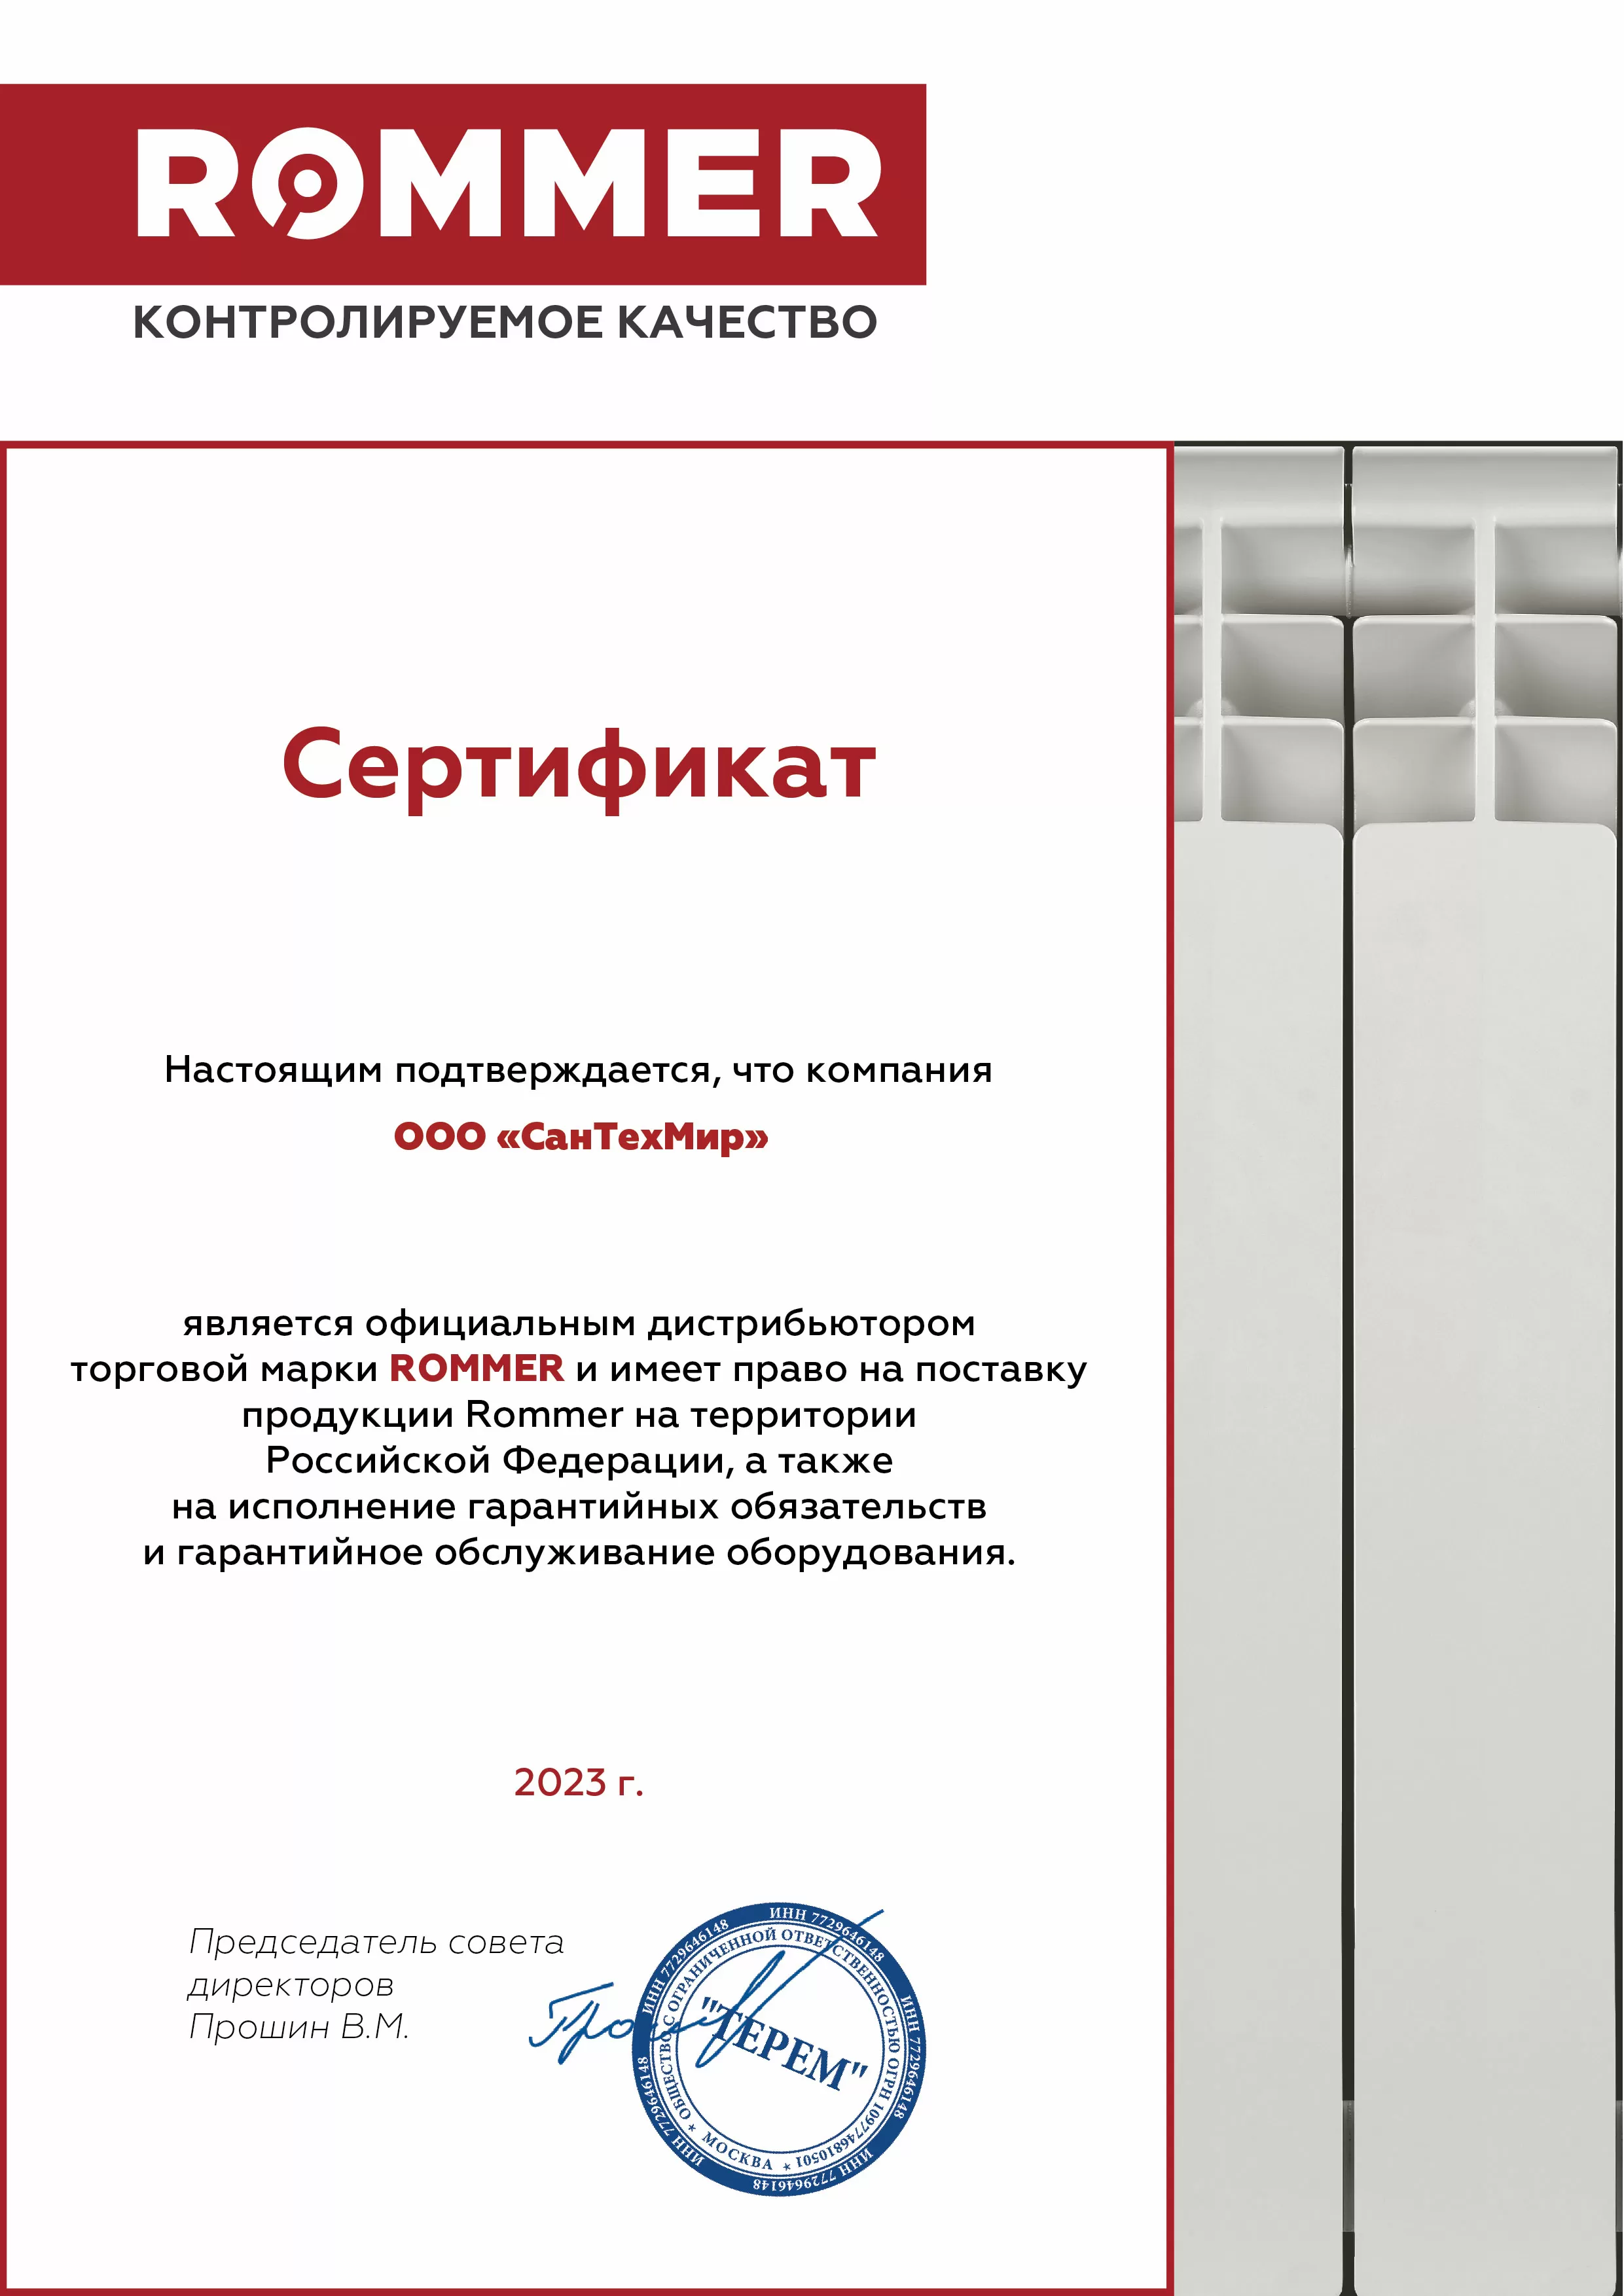 Rommer (сертификат за 2023 год)